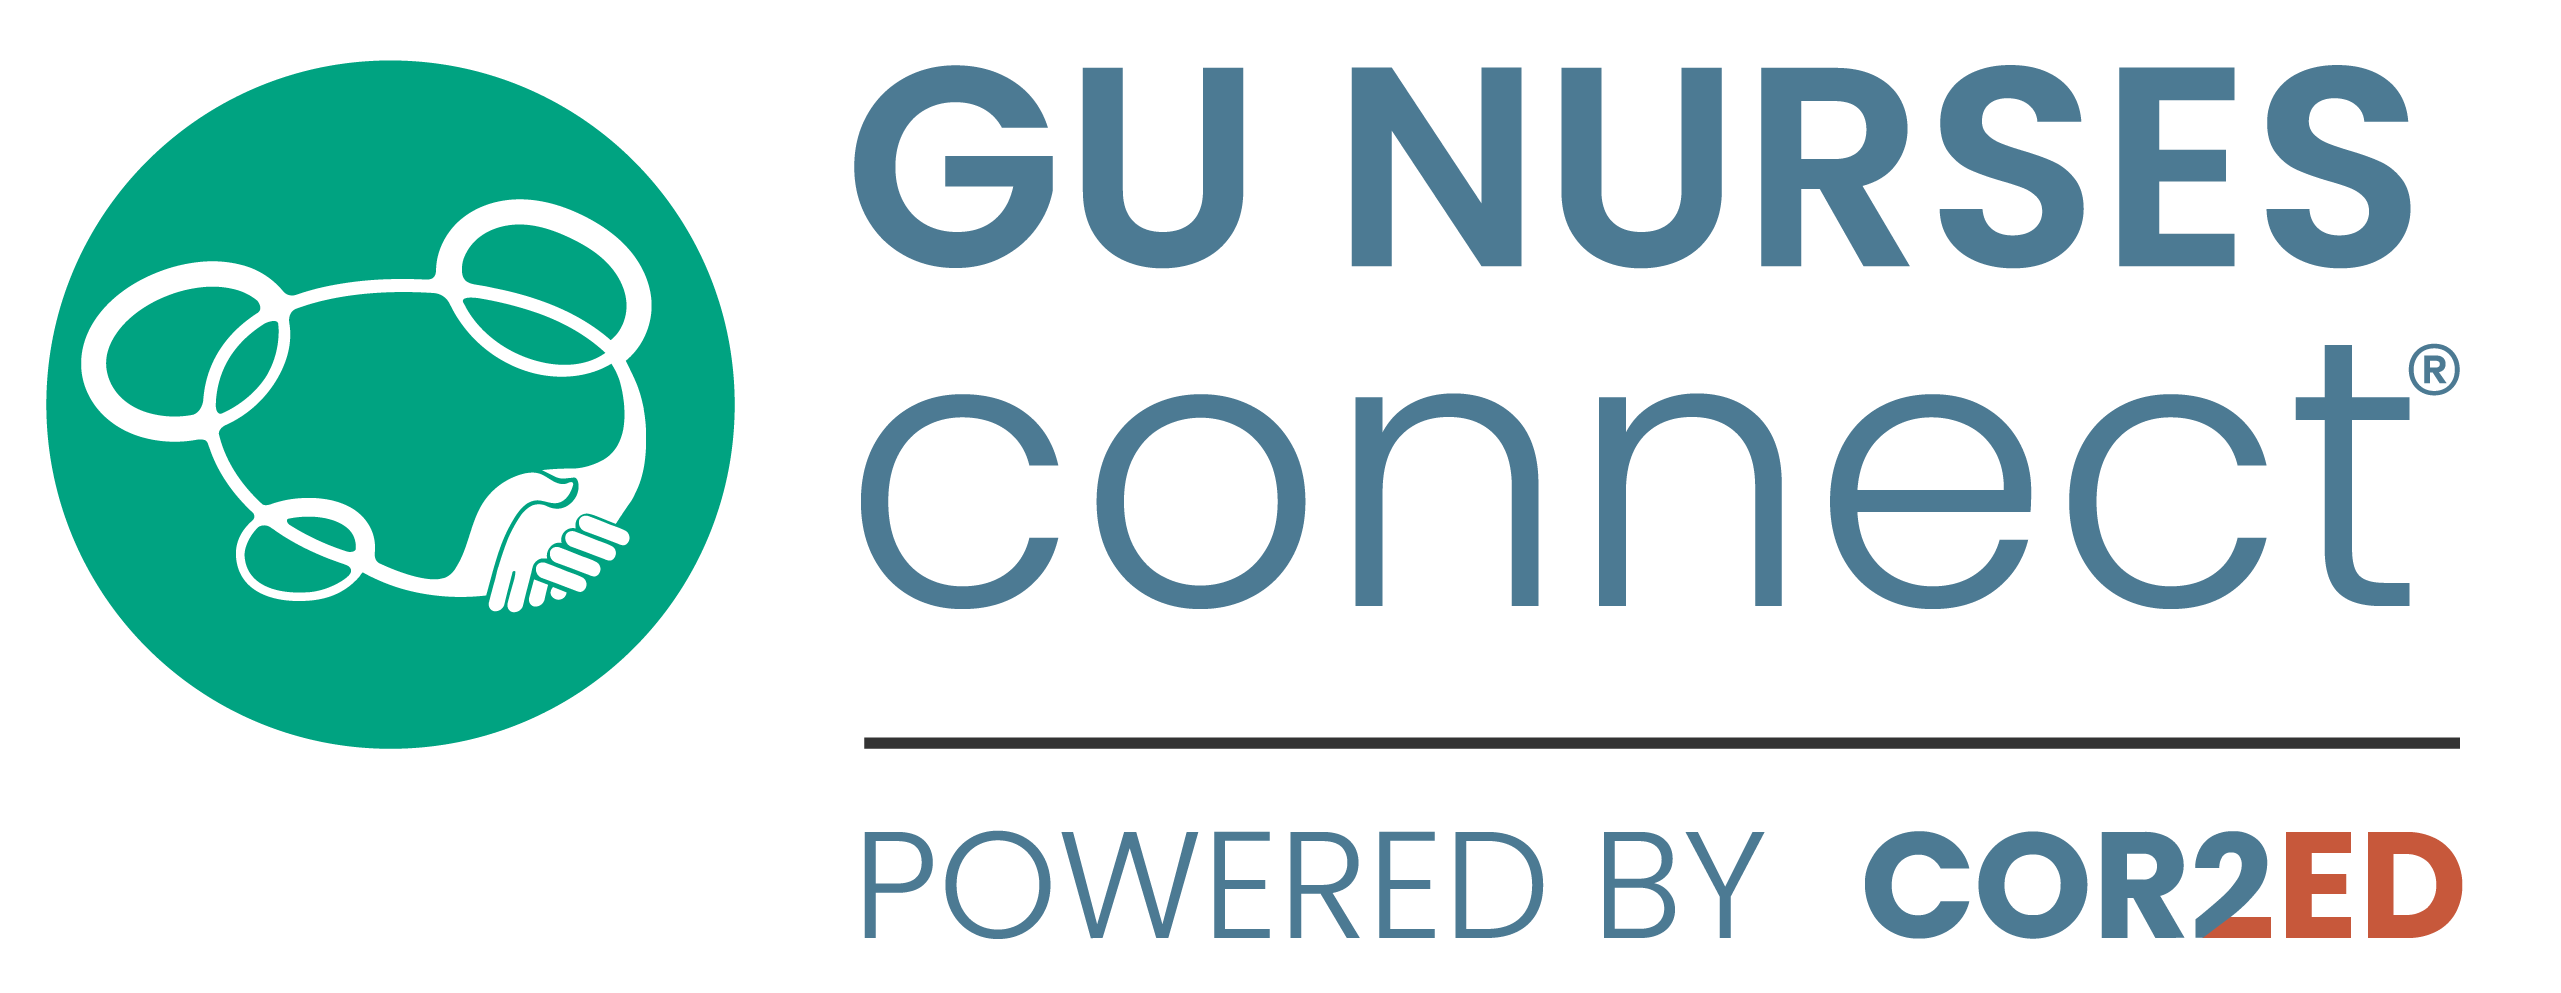 gu-nurses-connect-logo